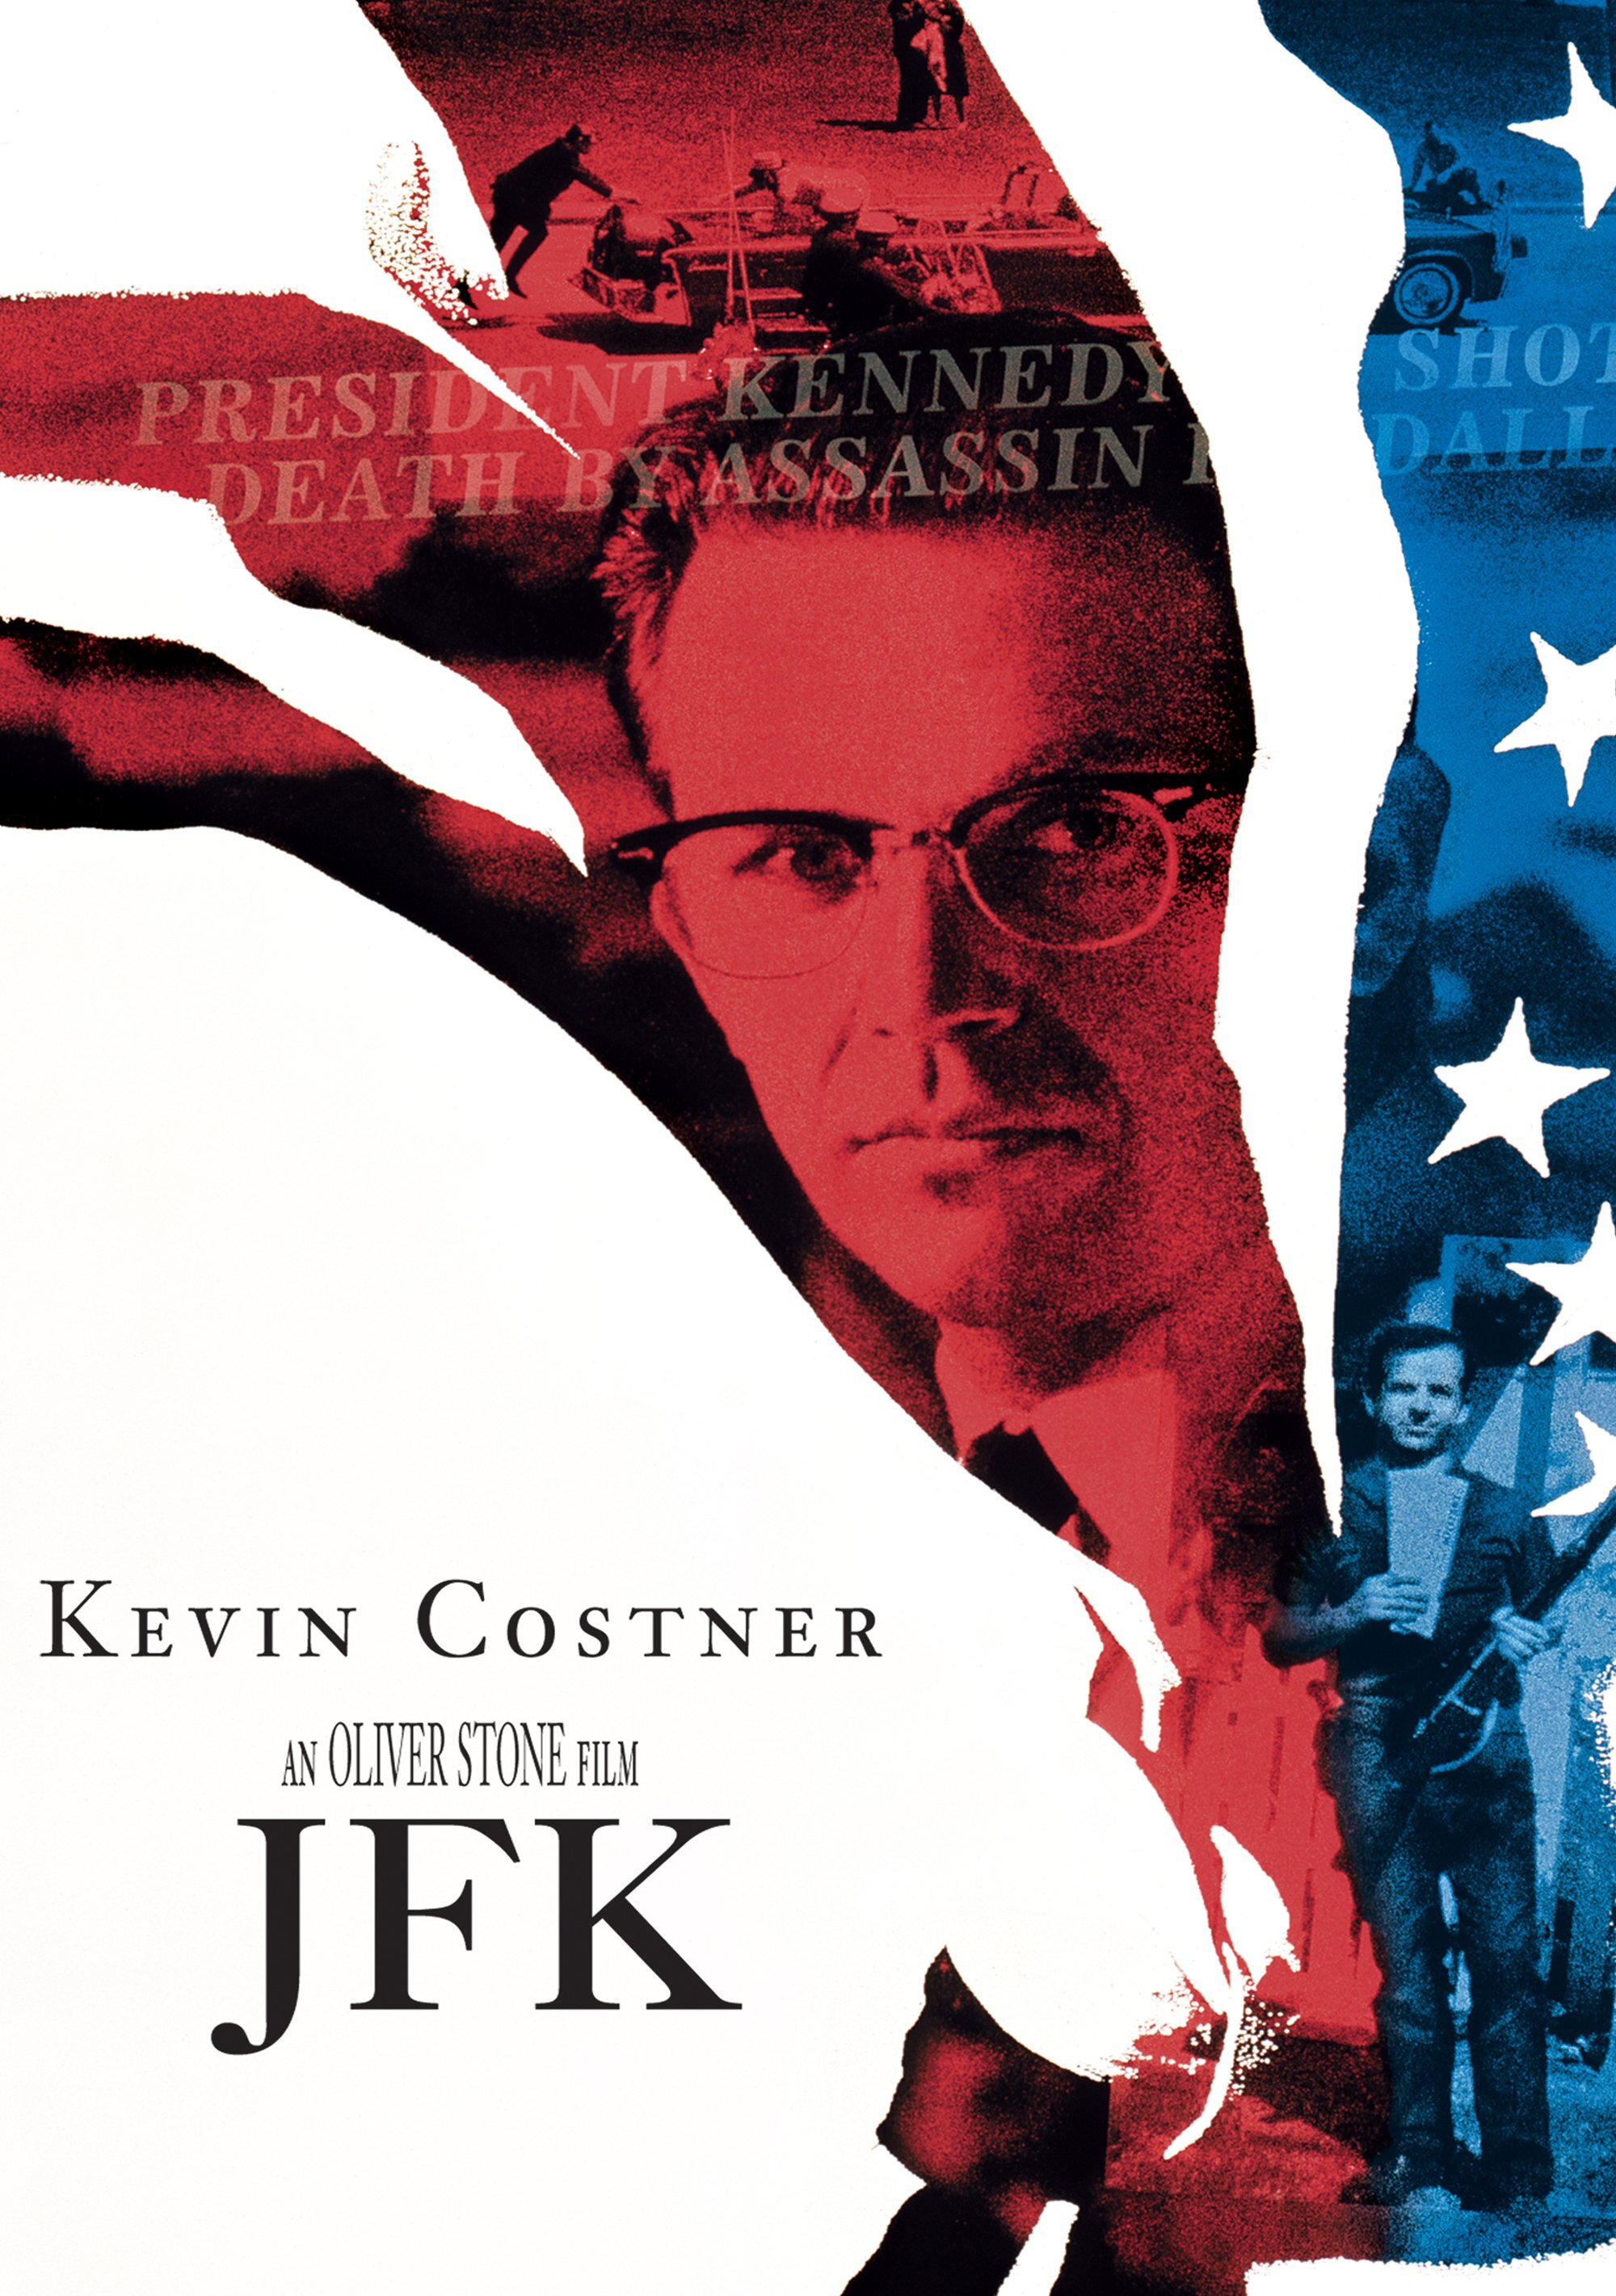 JFK - DVD [ 1991 ]  - Drama Movies On DVD - Movies On GRUV